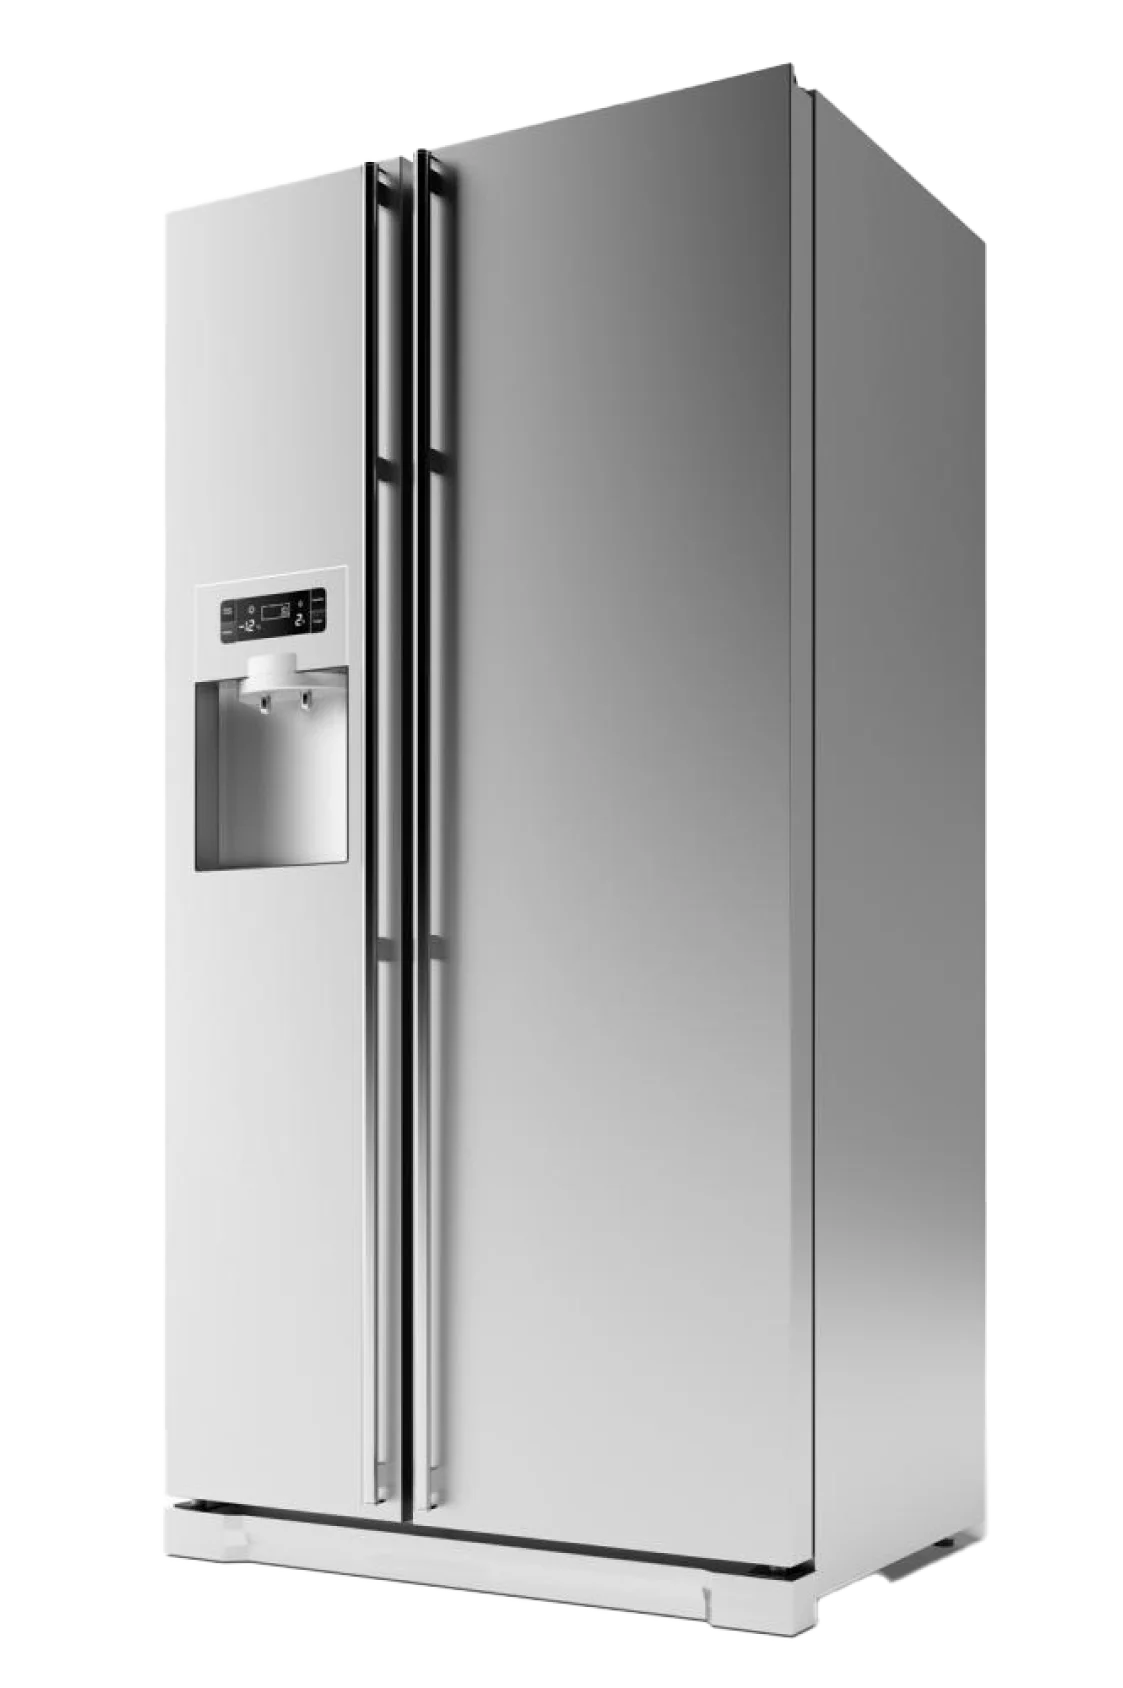 Холодильники Бирюса - популярные поломки и неисправности